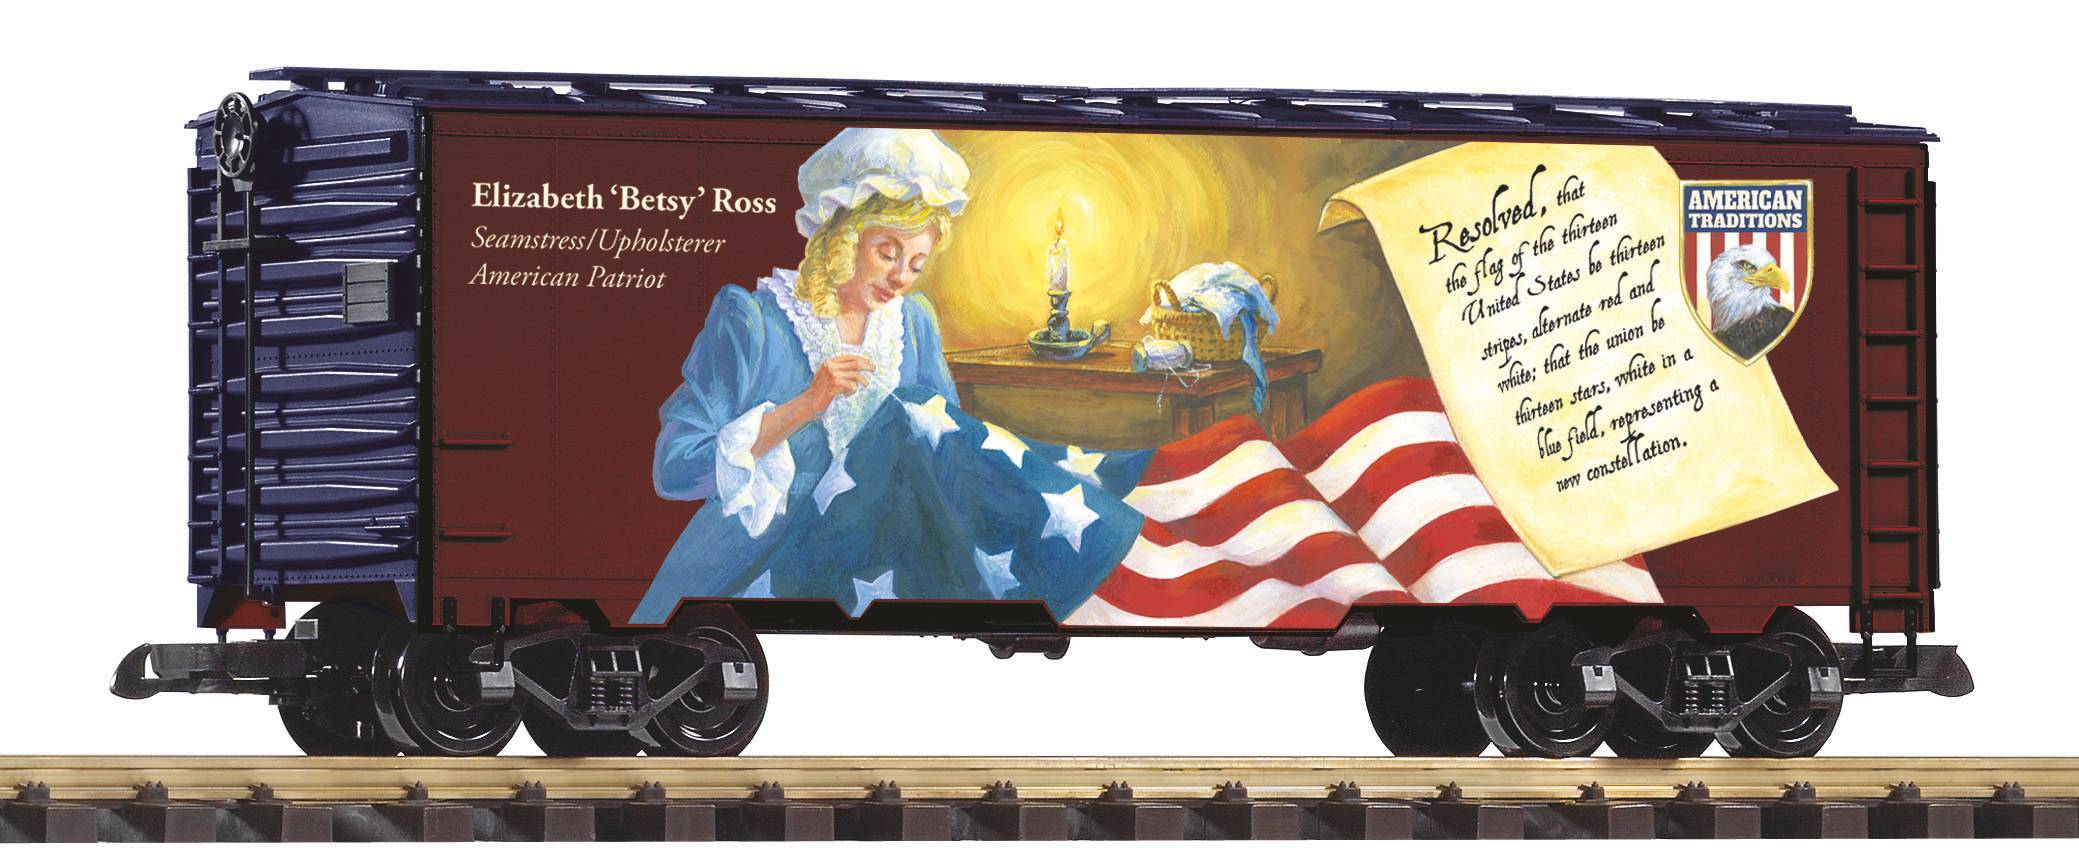 G Kühlwagen "Patriot" - Mit Betsy Ross - nähte die erste Fahne der USA - Art. Nr. 38922 - Neuheit 2021